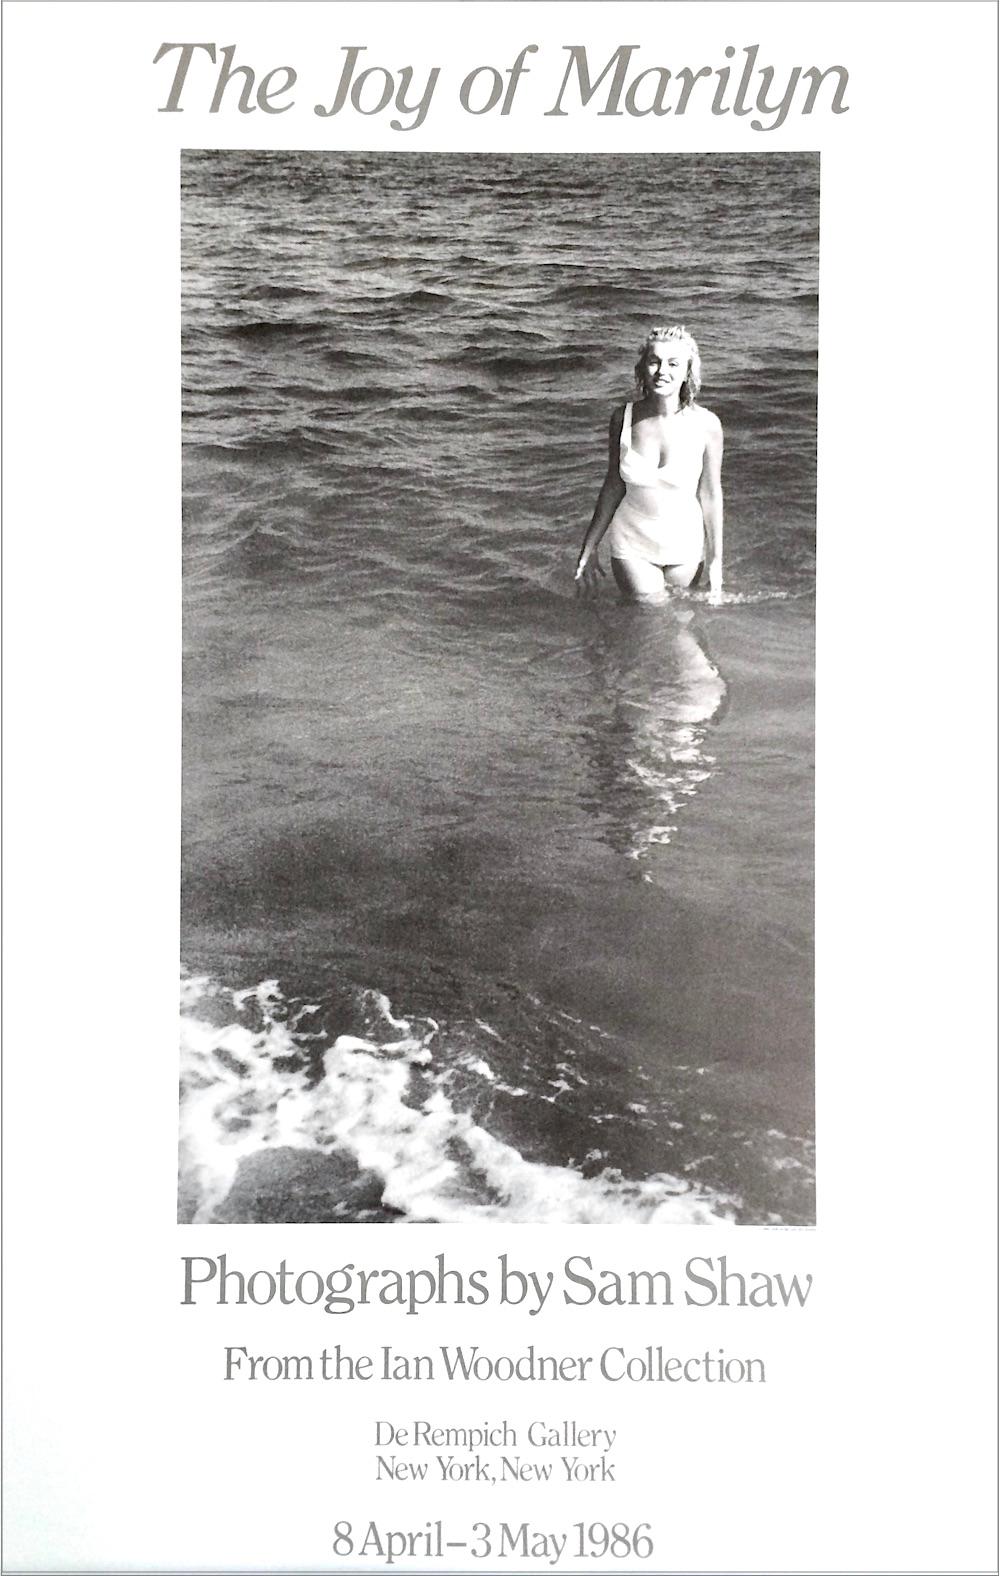 THE JOY OF MARILYN ist ein Ausstellungsplakat des bekannten amerikanischen Fotografen und Filmproduzenten Sam Shaw, das 1986 in Verbindung mit einer Fotoausstellung von Sam Shaw in New York City produziert wurde. THE JOY OF MARILYN wurde in